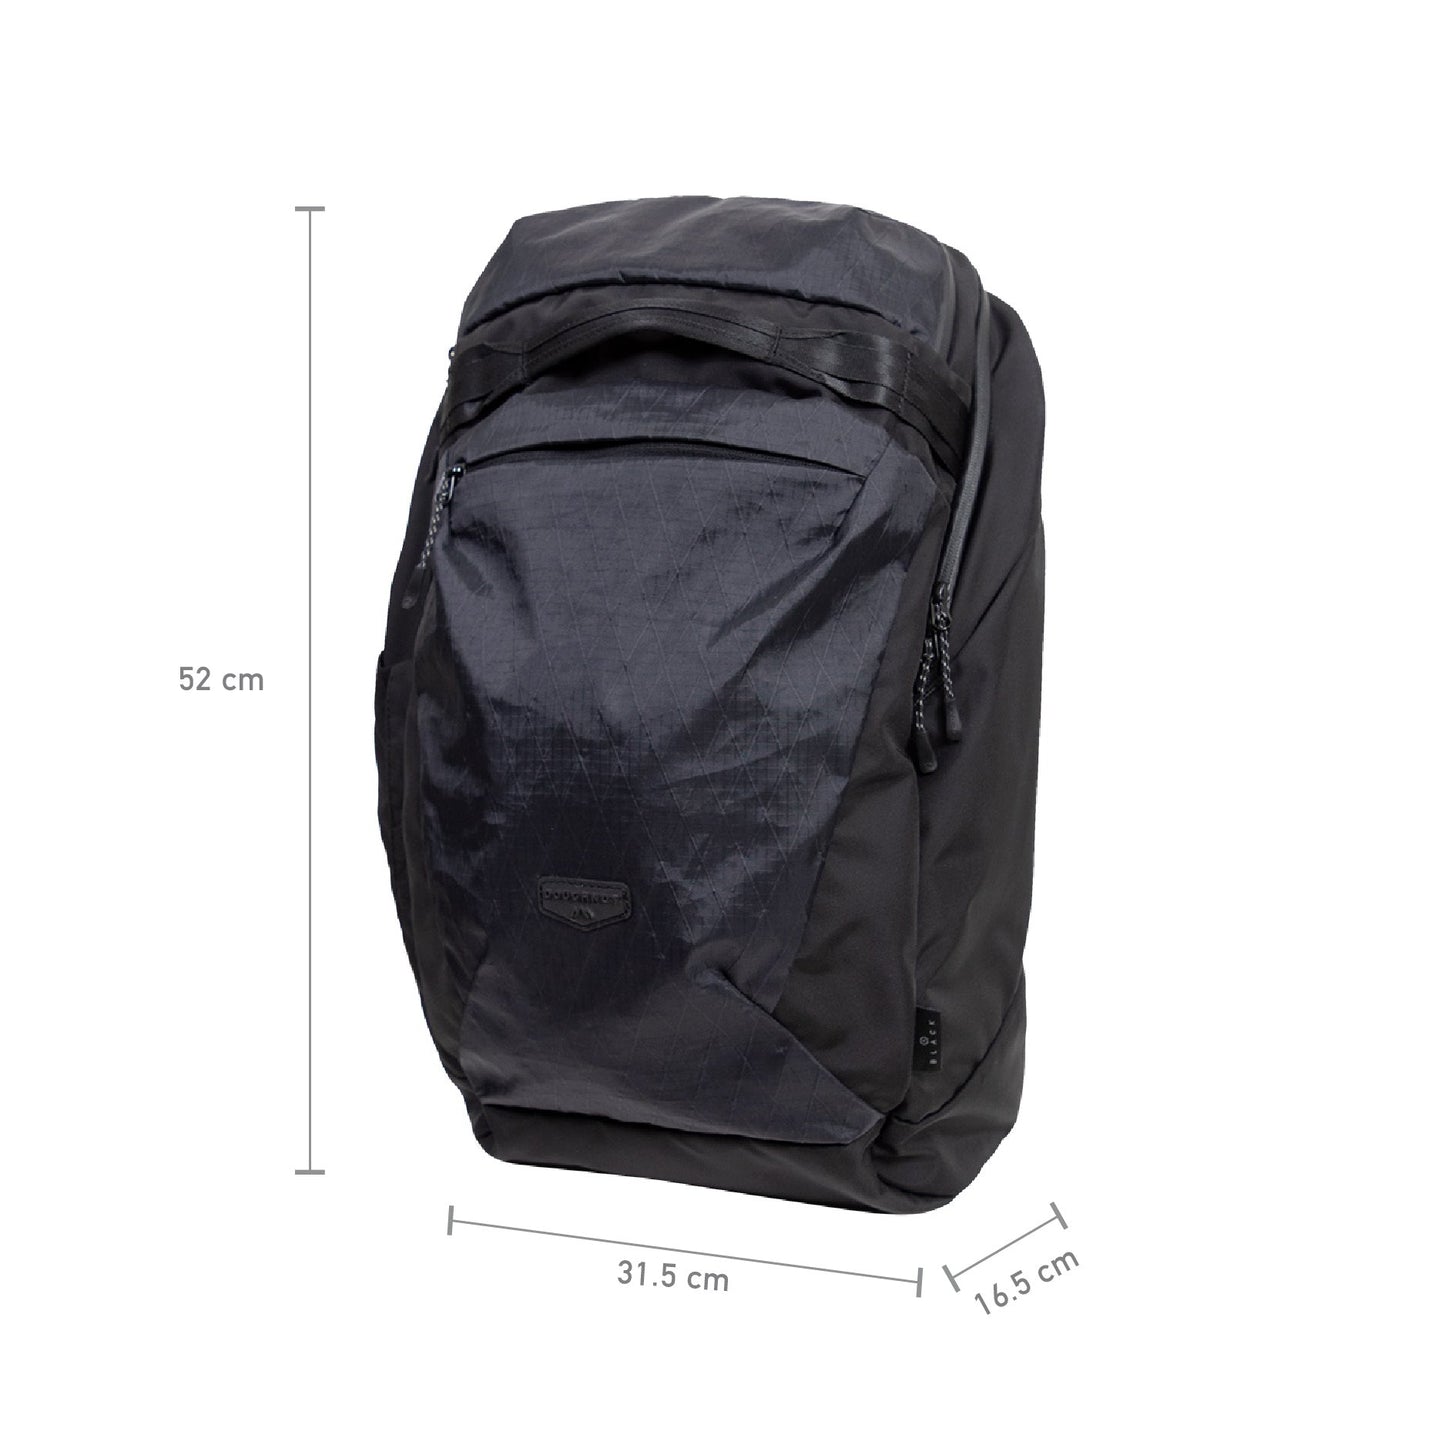 Stargazer Black Backpack